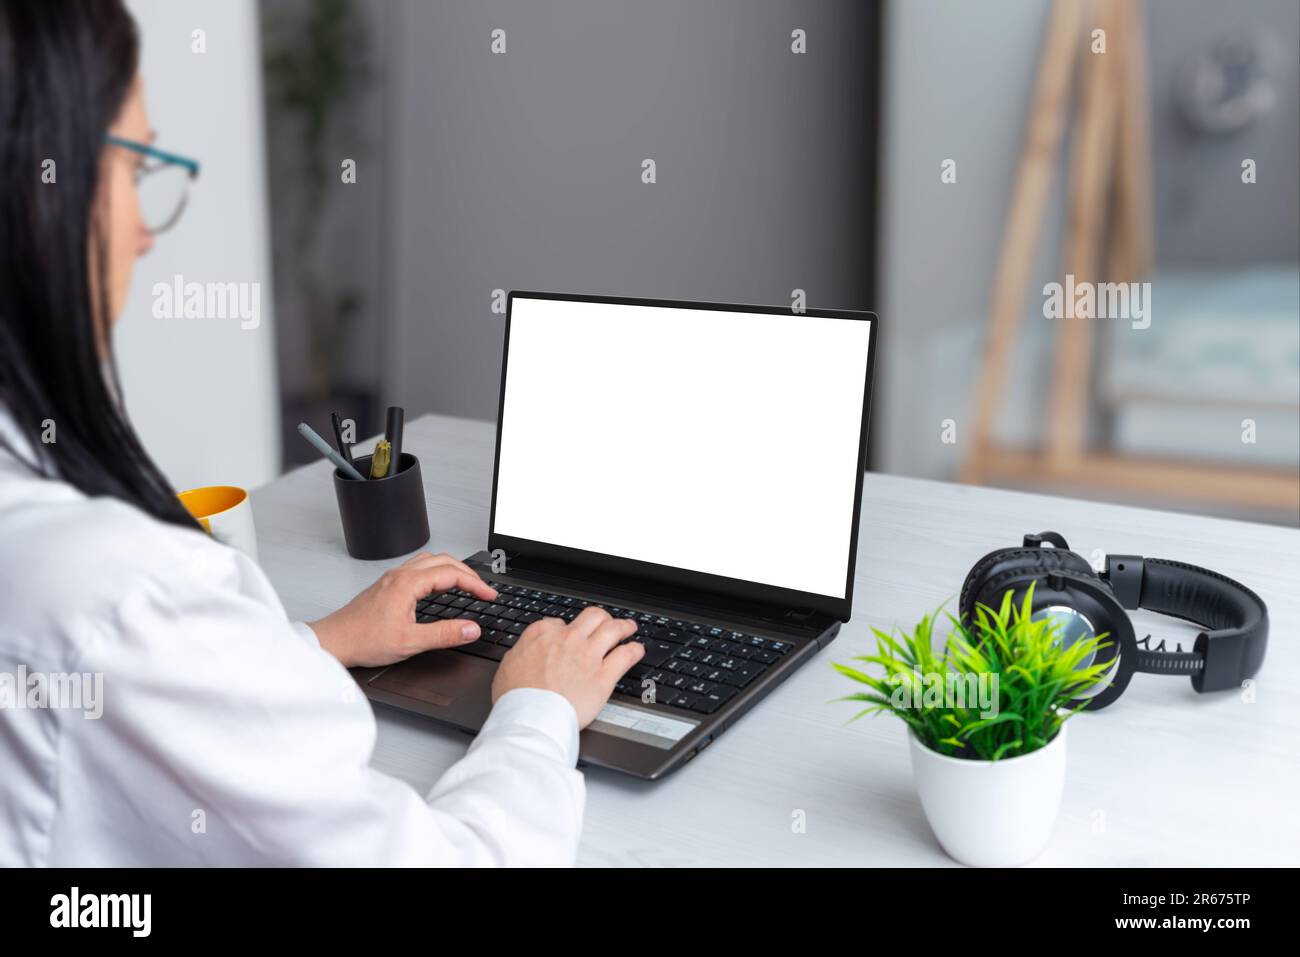 Une jeune fille concentrée travaille sur un ordinateur portable avec un écran isolé pour la maquette. Ambiance professionnelle sur un bureau Banque D'Images